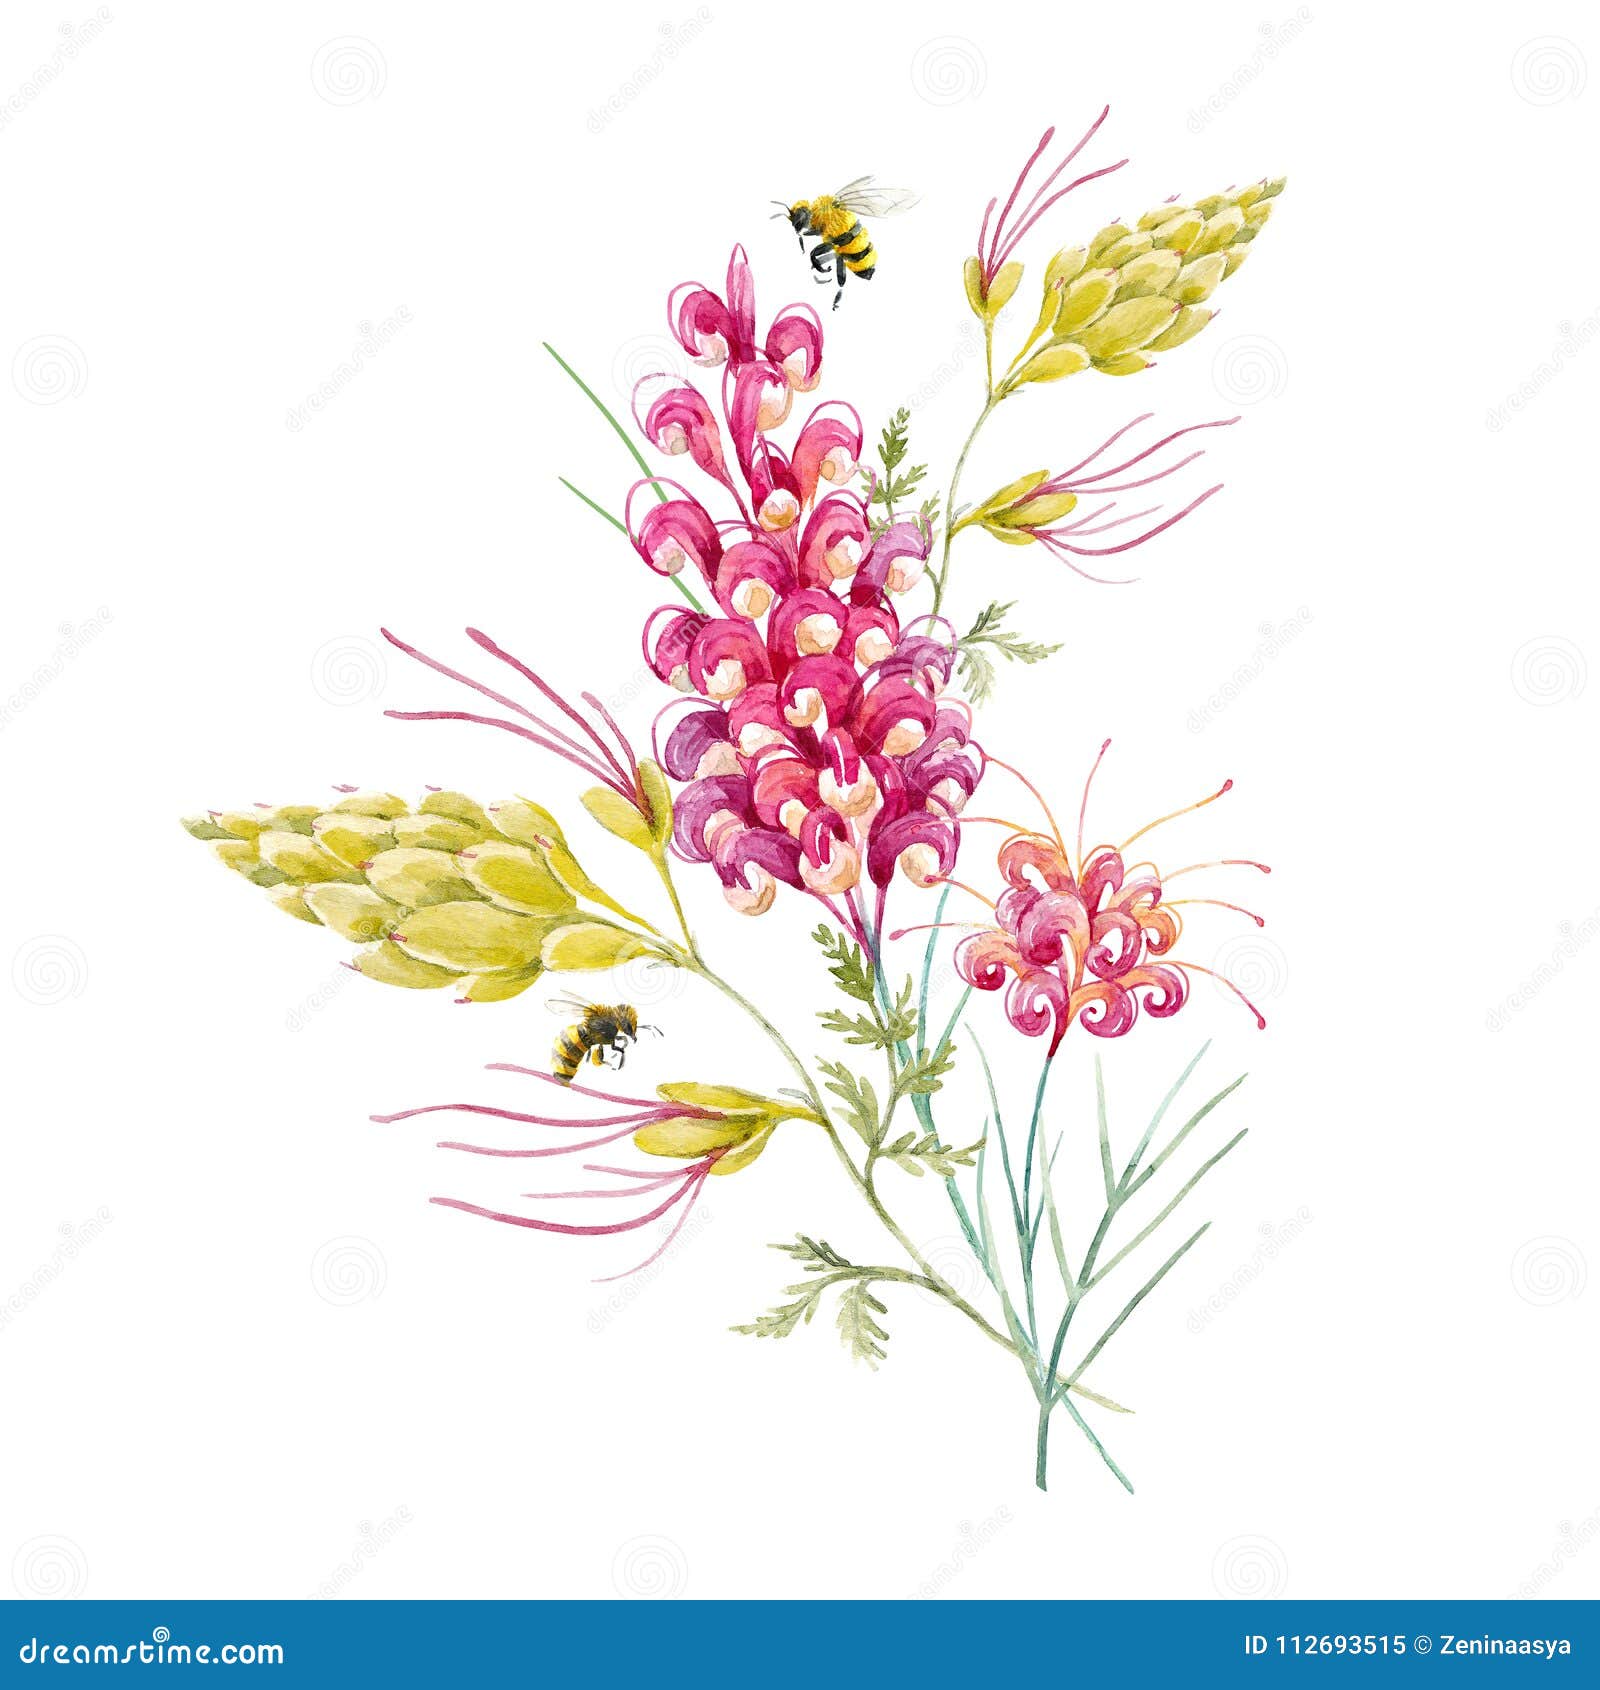 watercolor australian grevillea flower